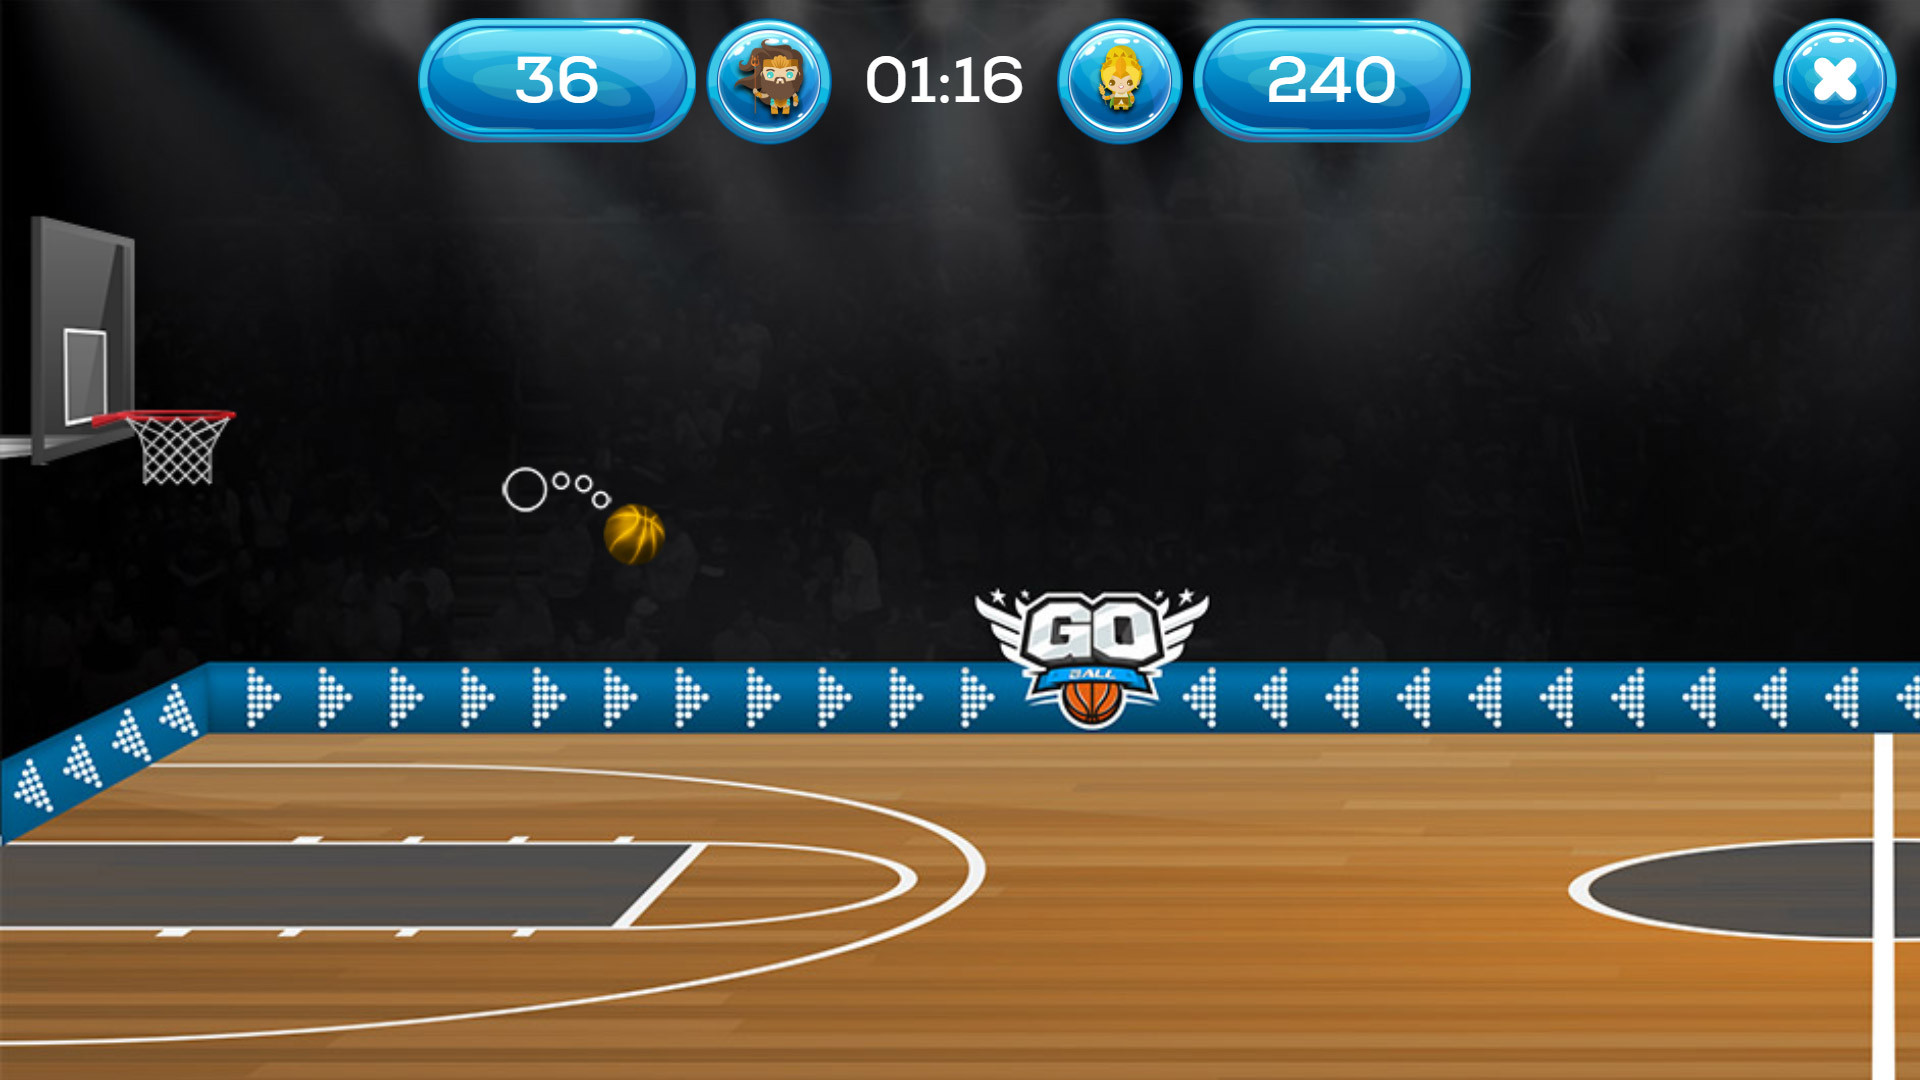 Go Ball - Multiplayer Online Basketball Game